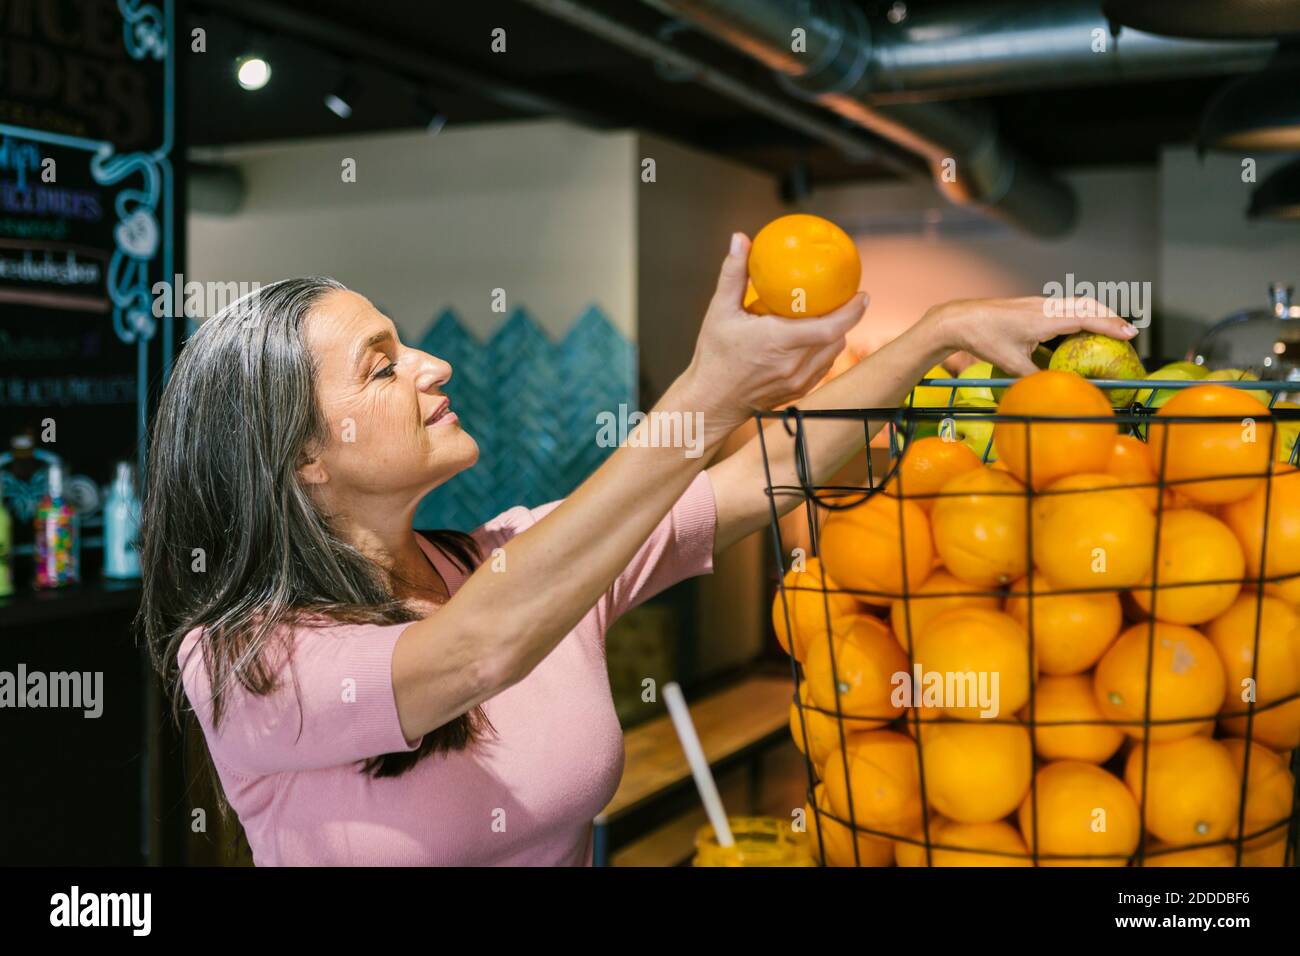 Smiling woman choosing fresh orange fruits in metallic basket at cafe Stock Photo